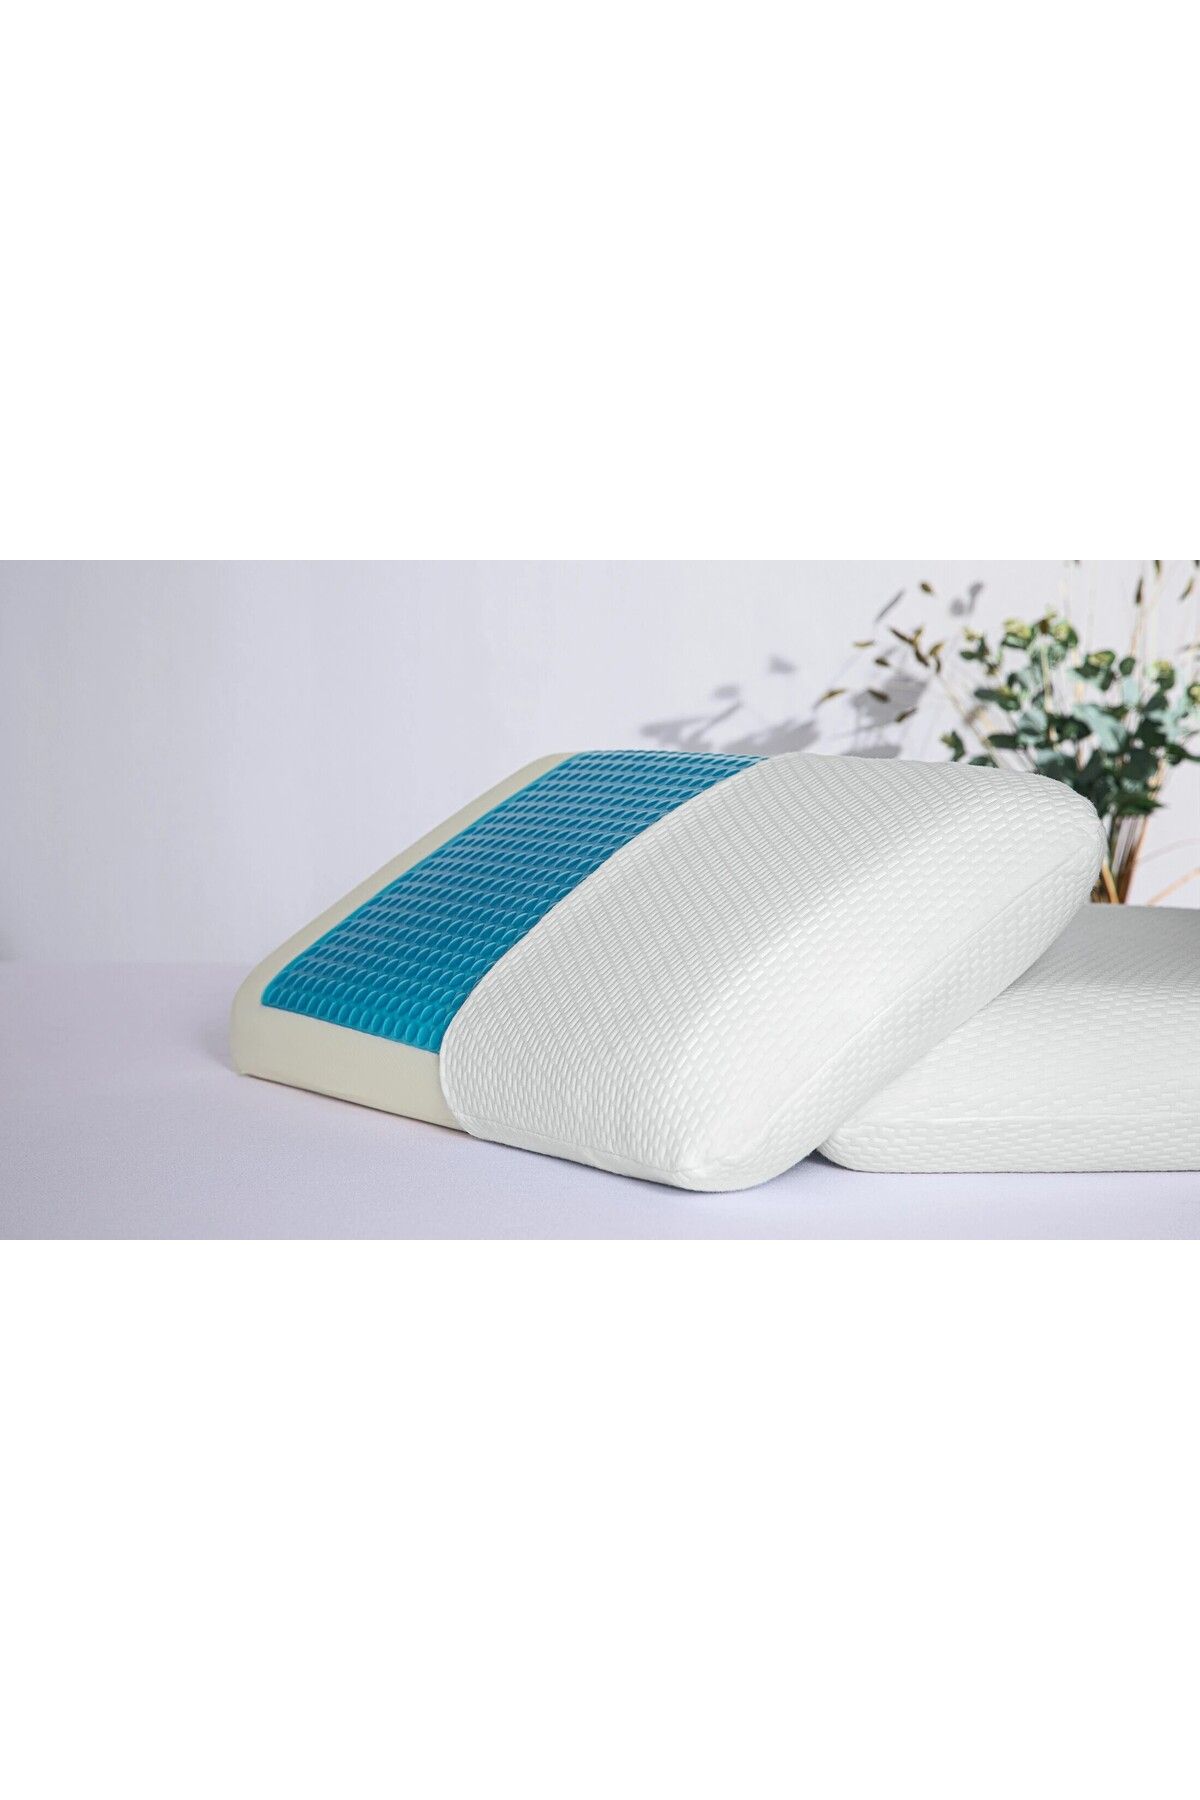 LASEL SLEEP - Visco Comfort Jel - Jelli Soğutuculu Terleme Önleyici Visco Yastık Ortopedik Boyun Yastığı